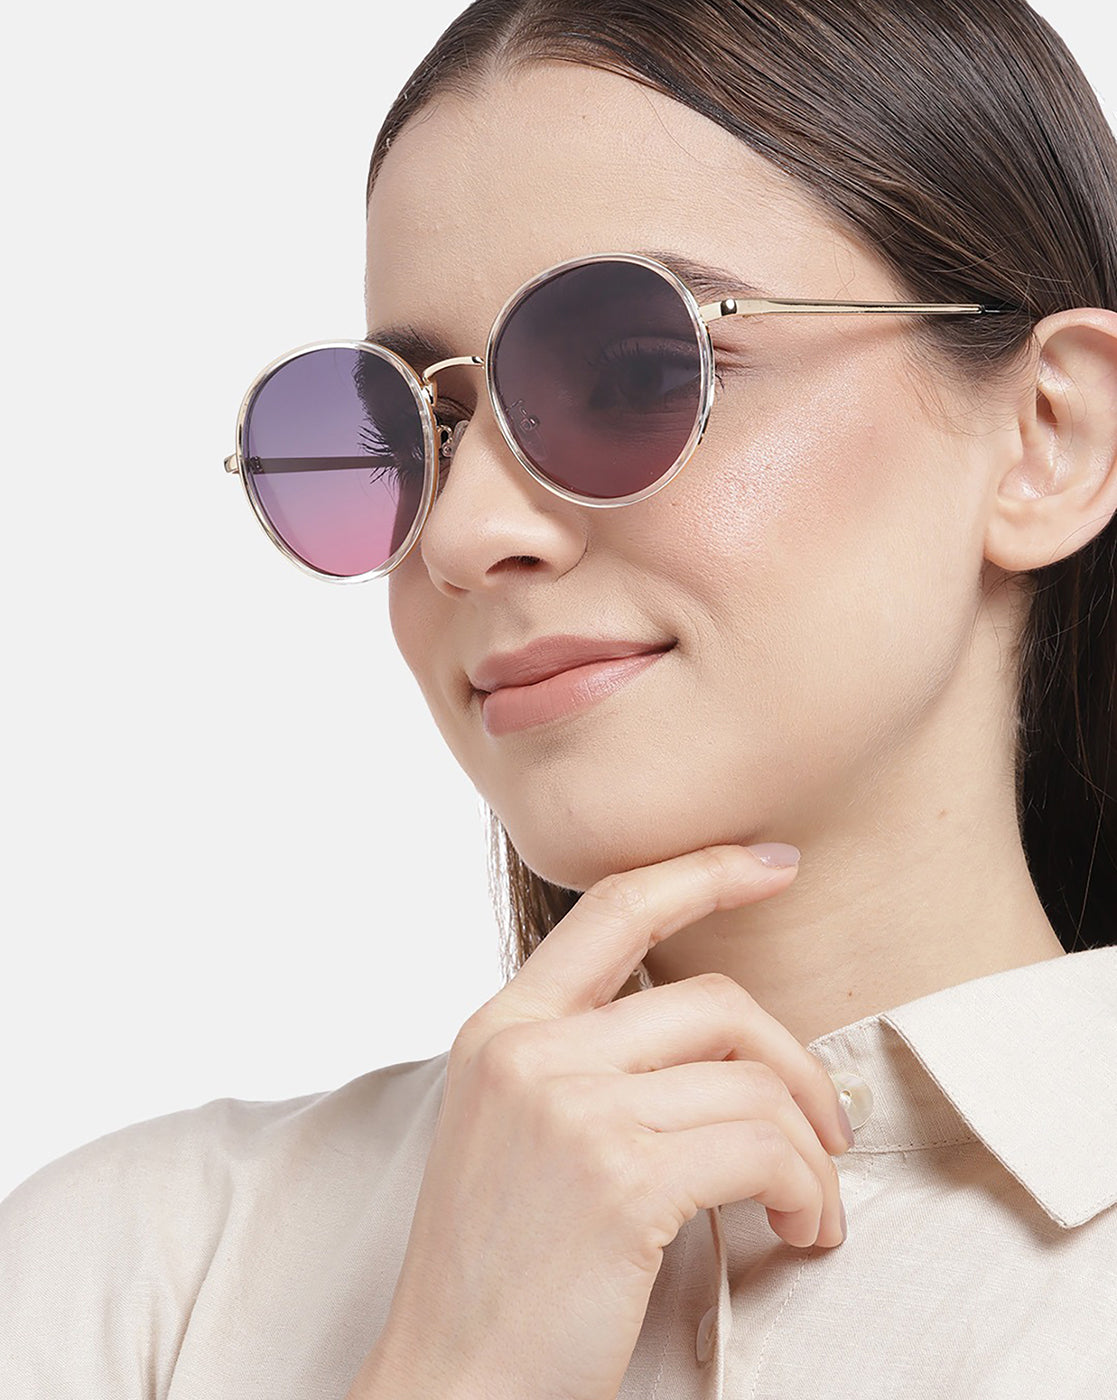 Women Sunglasses - Buy Women Sunglasses Online Starting at Just ₹61 | Meesho